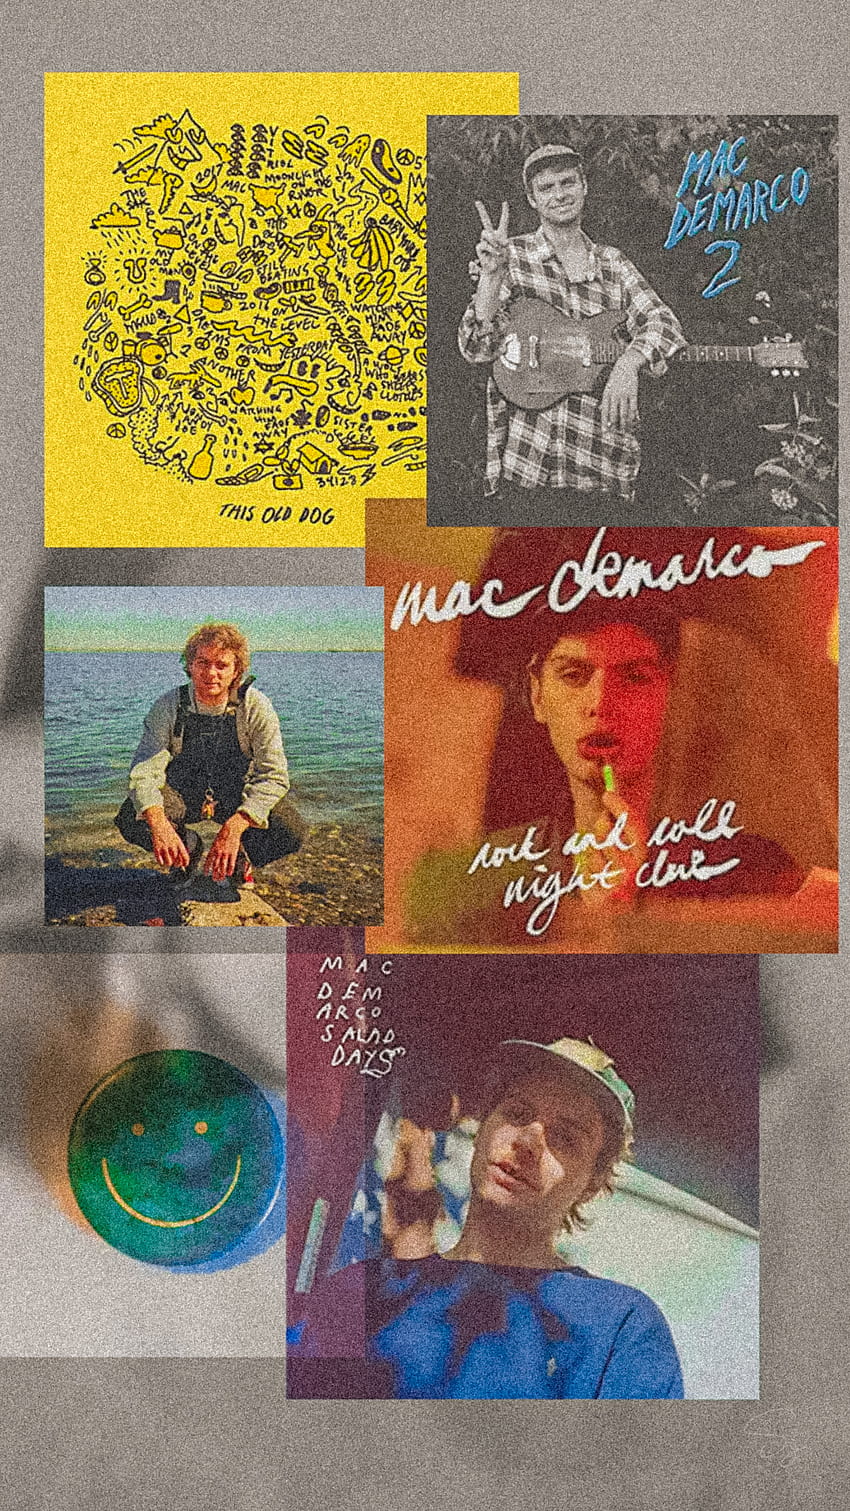 Mac demarco vinyl, indie, music, macdemarco, thisolddog, album, grain, saladdays HD phone wallpaper